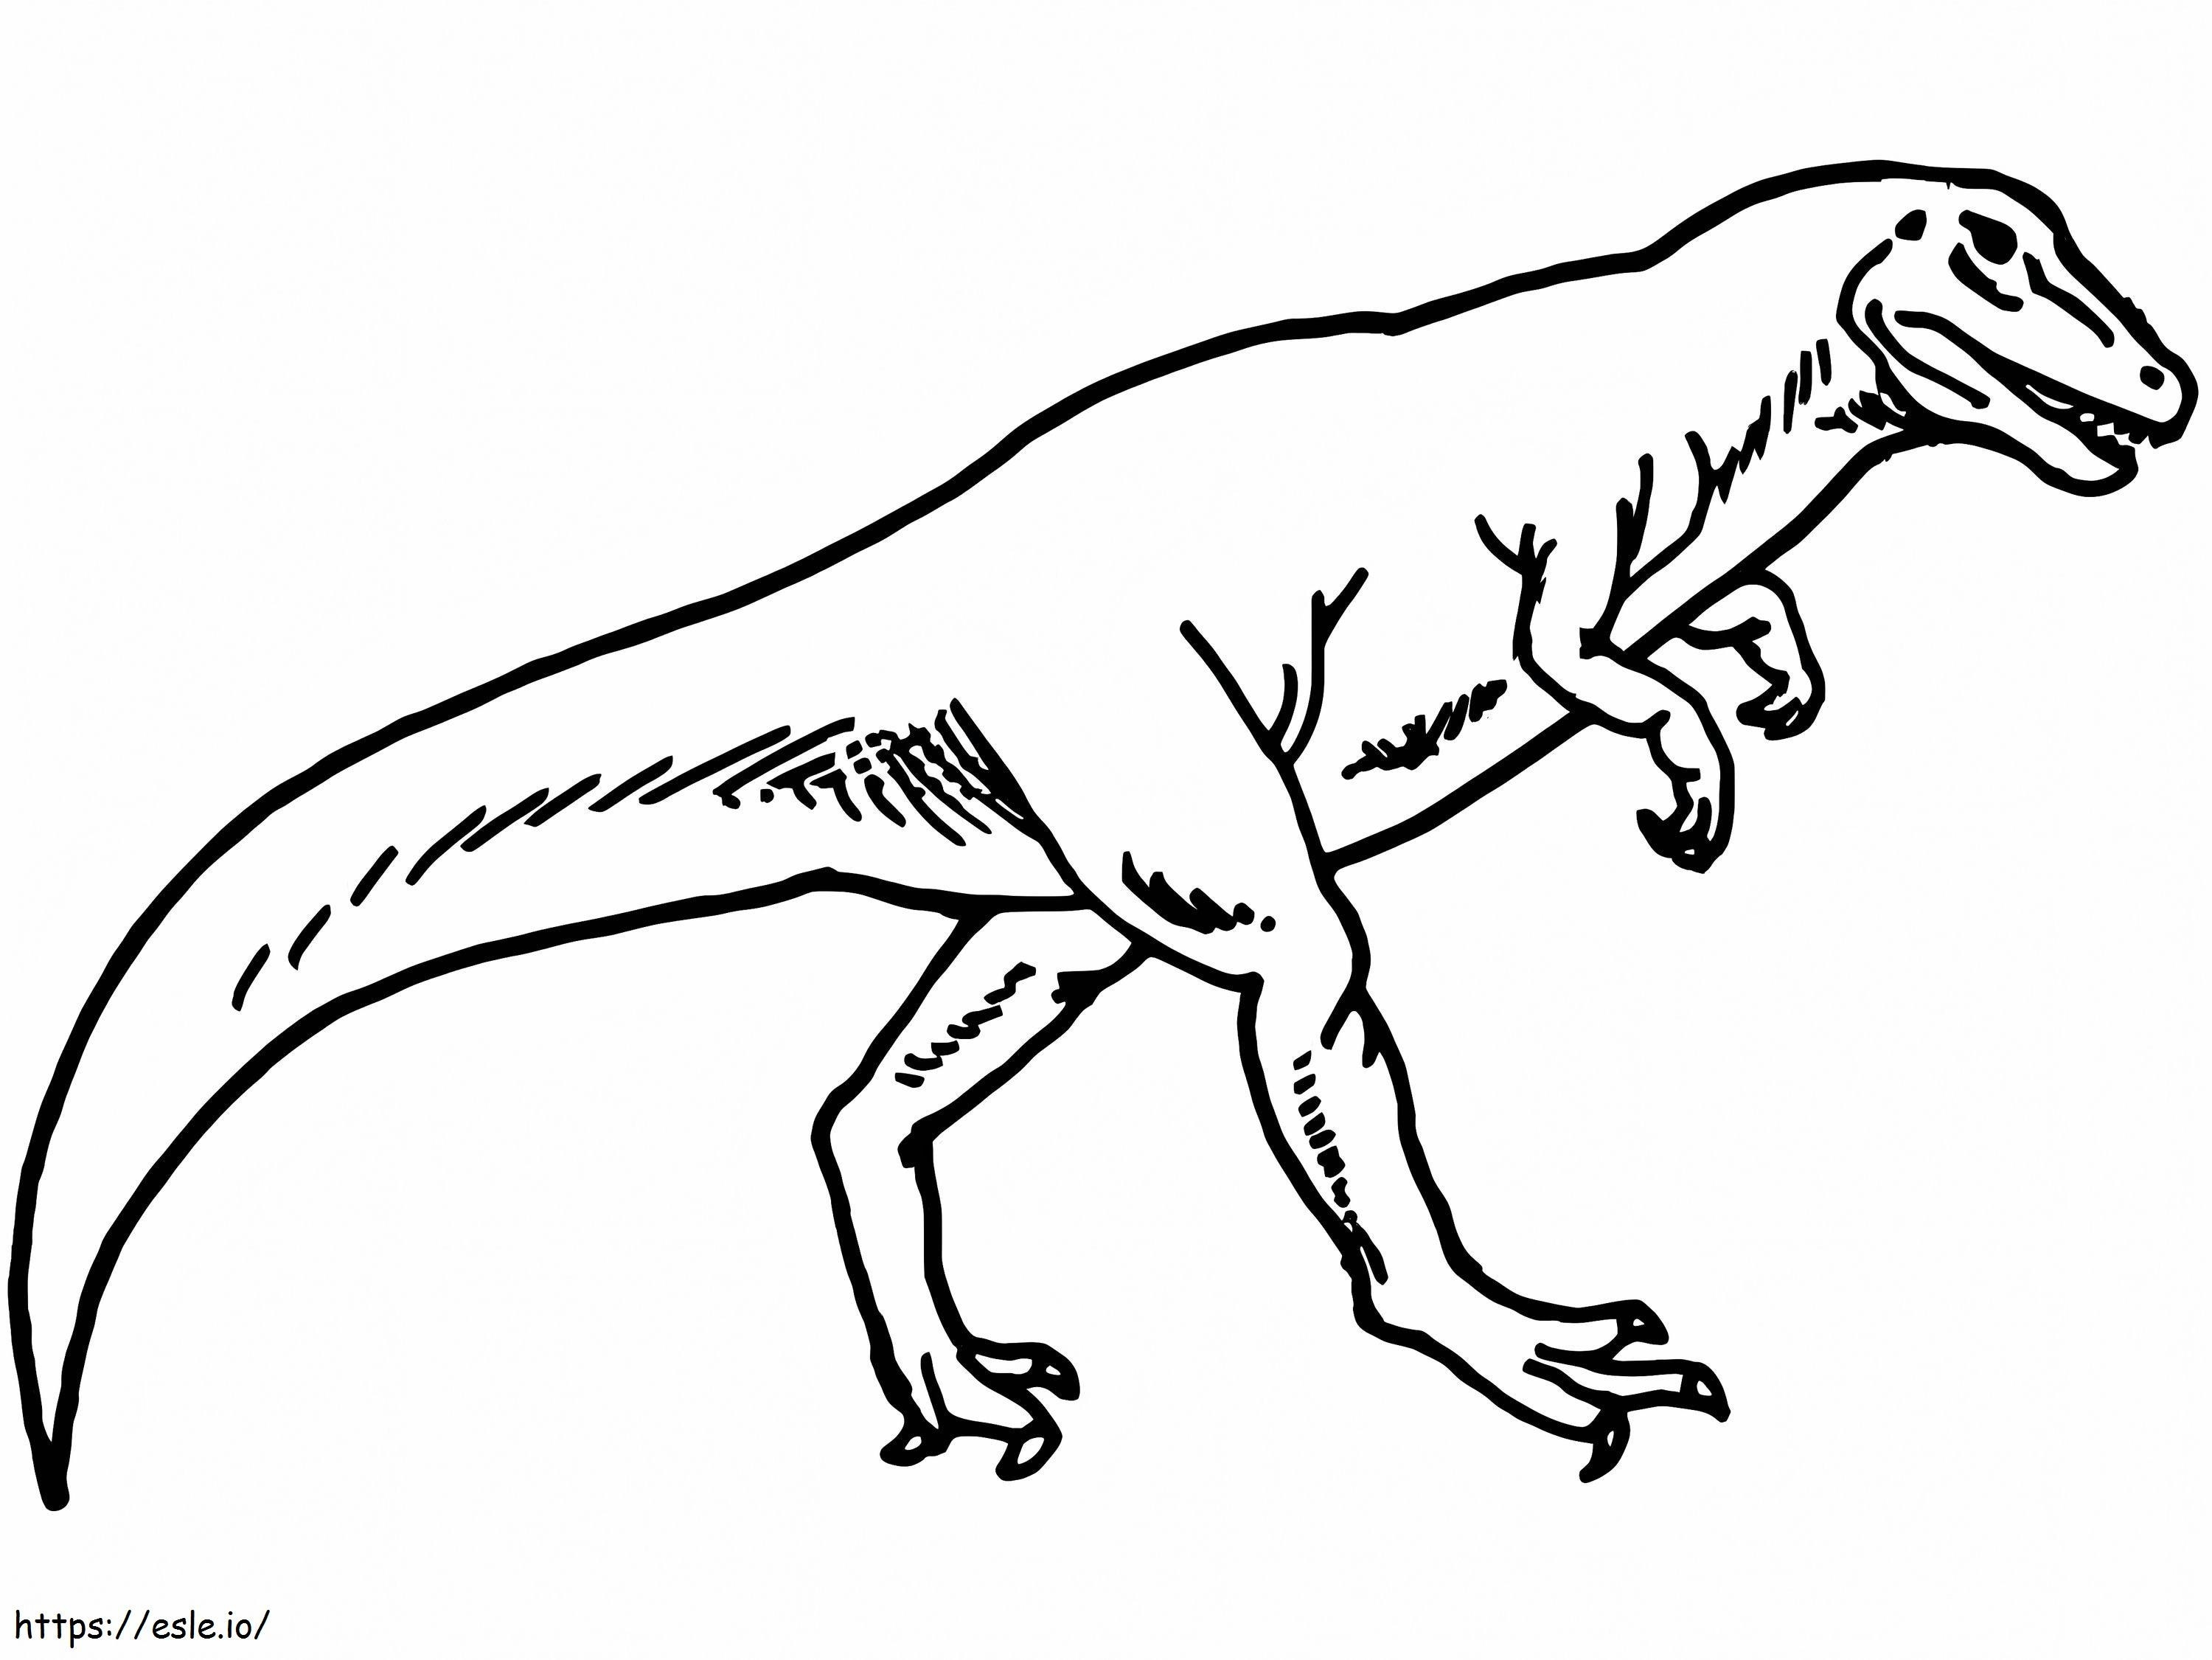 Dinozor Allosaurus 1 boyama